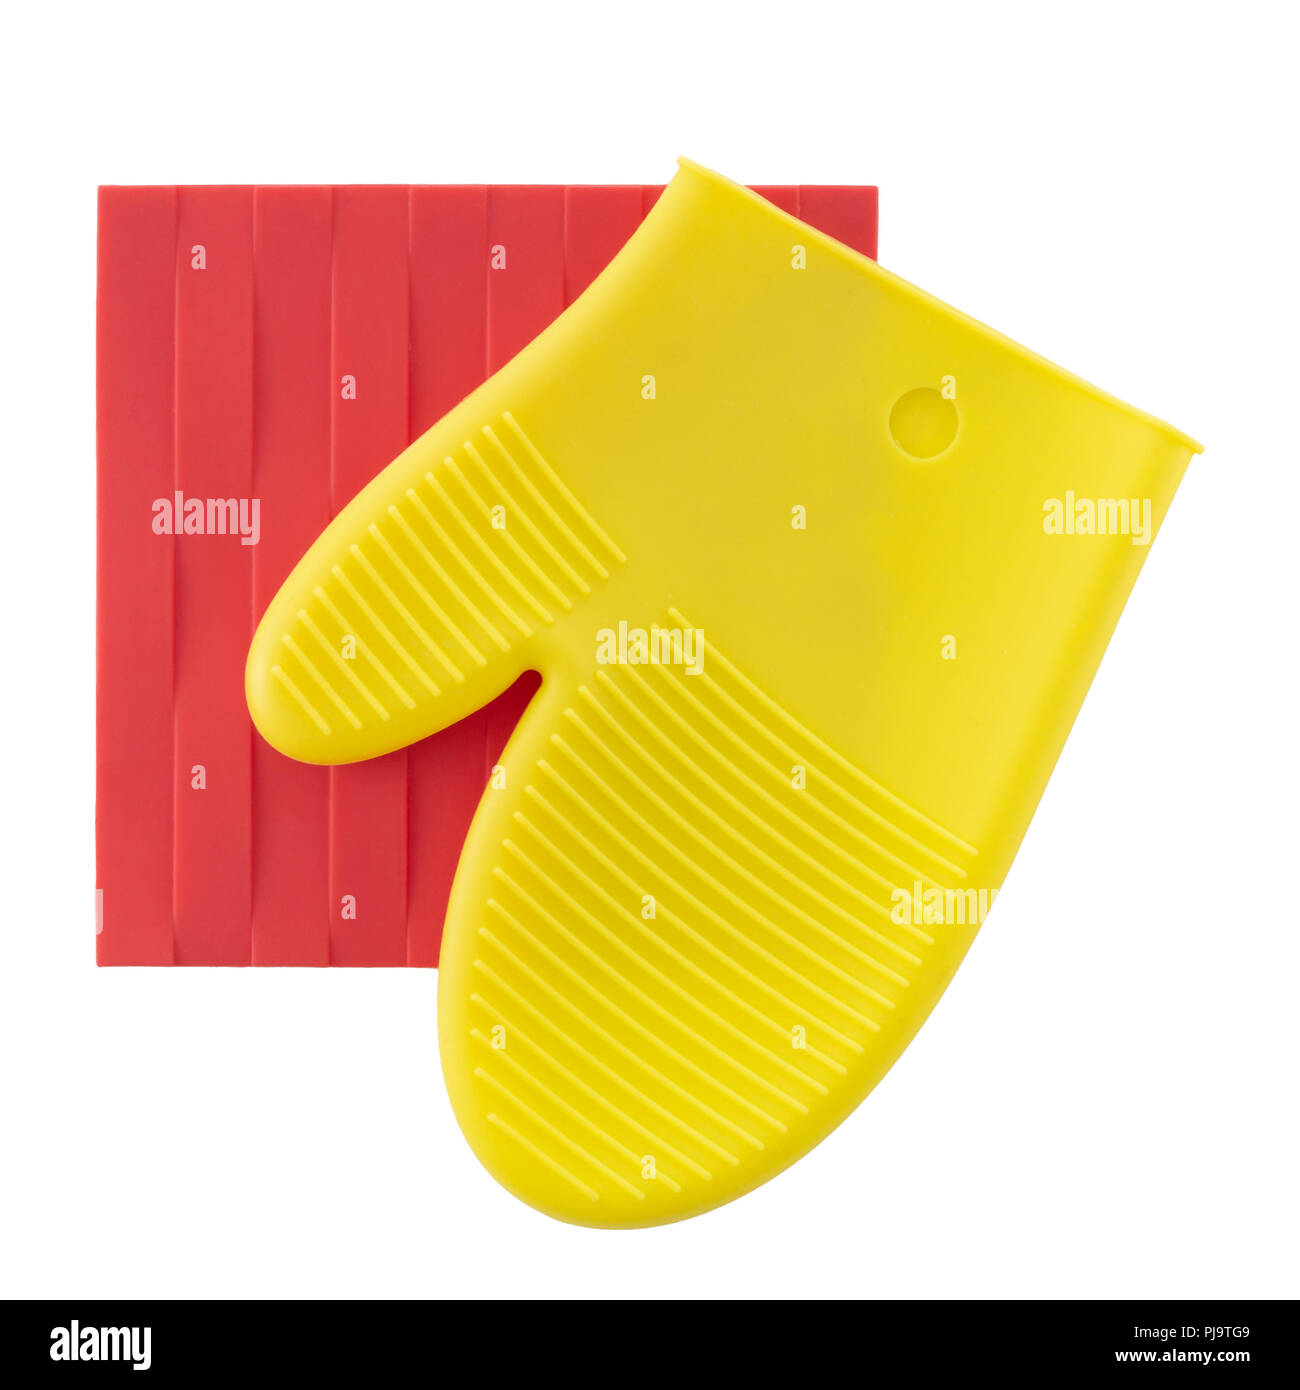 Silikon, Silikon Topflappen, Rot und Gelb, auf weißem Hintergrund. Modernen Küchenutensilien, Square und mitt Glove Form. Stockfoto